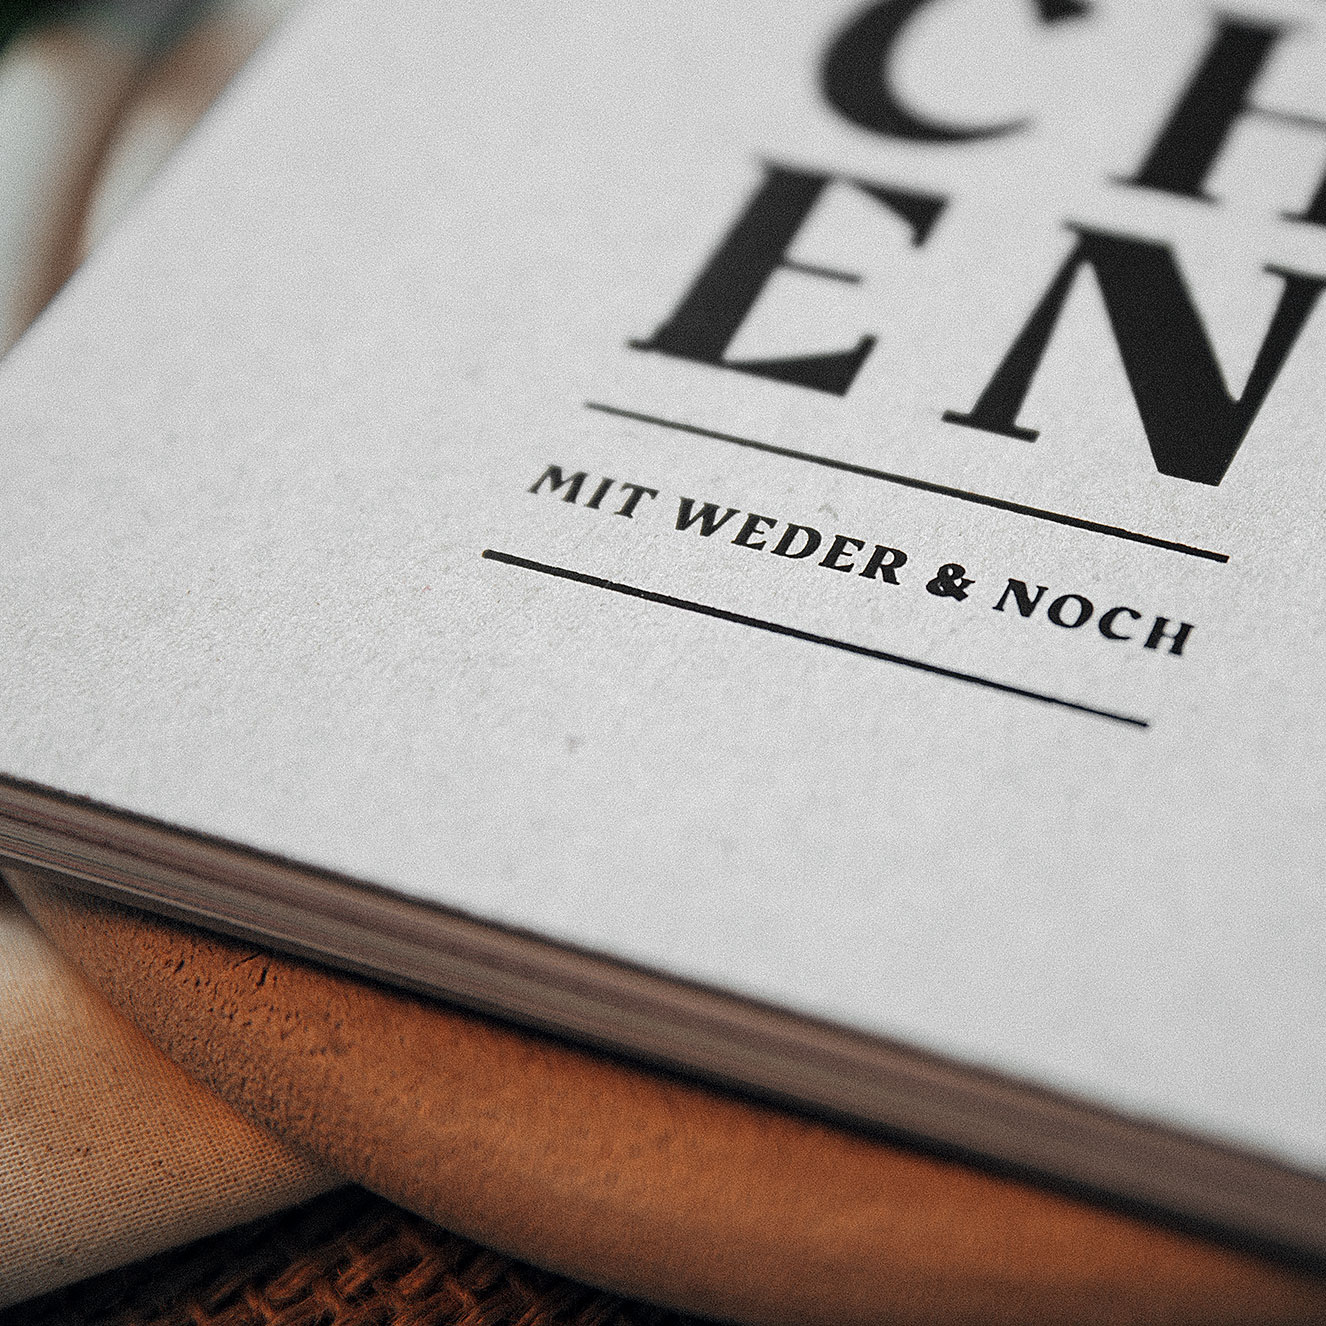 Weder & Noch Kochbuch Closeup Details